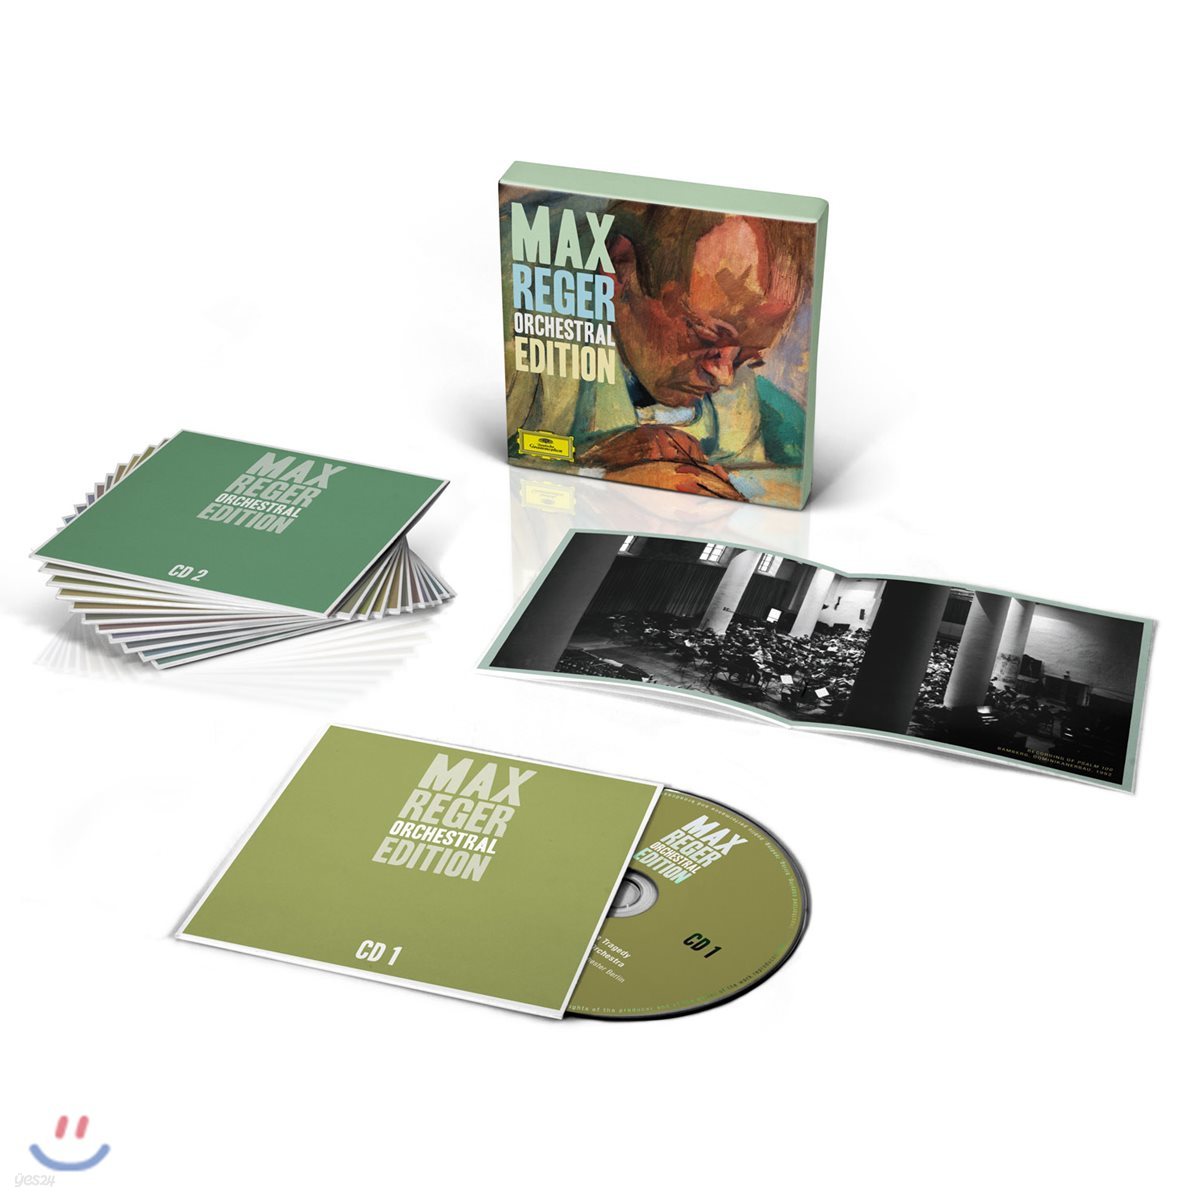 막스 레거: 관현악 에디션 (Max Reger: Orchestral Edition)